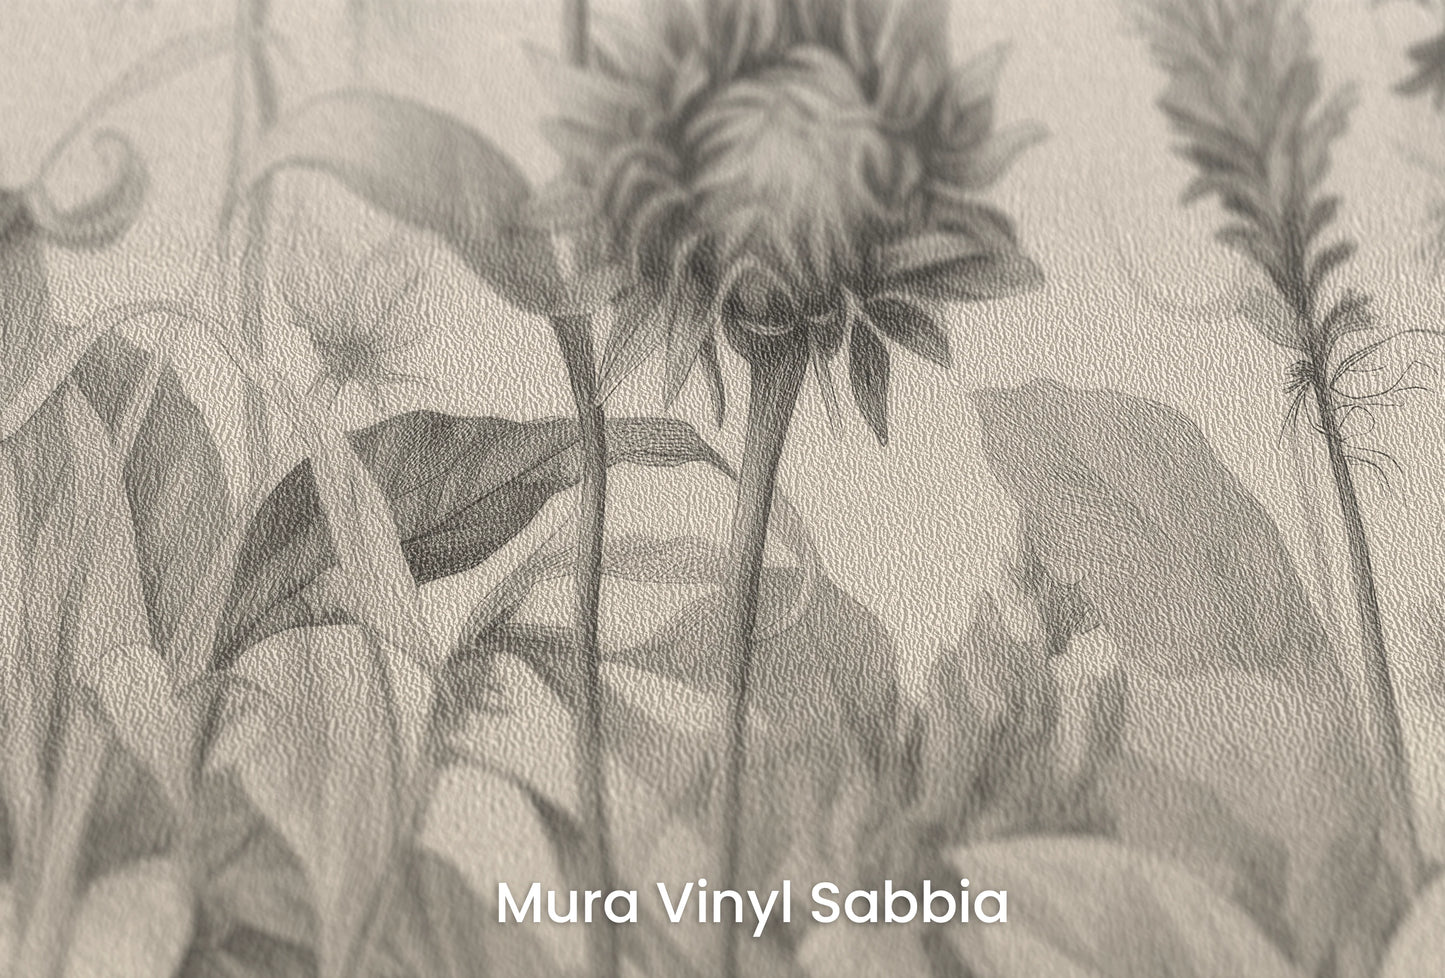 Zbliżenie na artystyczną fototapetę o nazwie Botanical Etchings na podłożu Mura Vinyl Sabbia struktura grubego ziarna piasku.